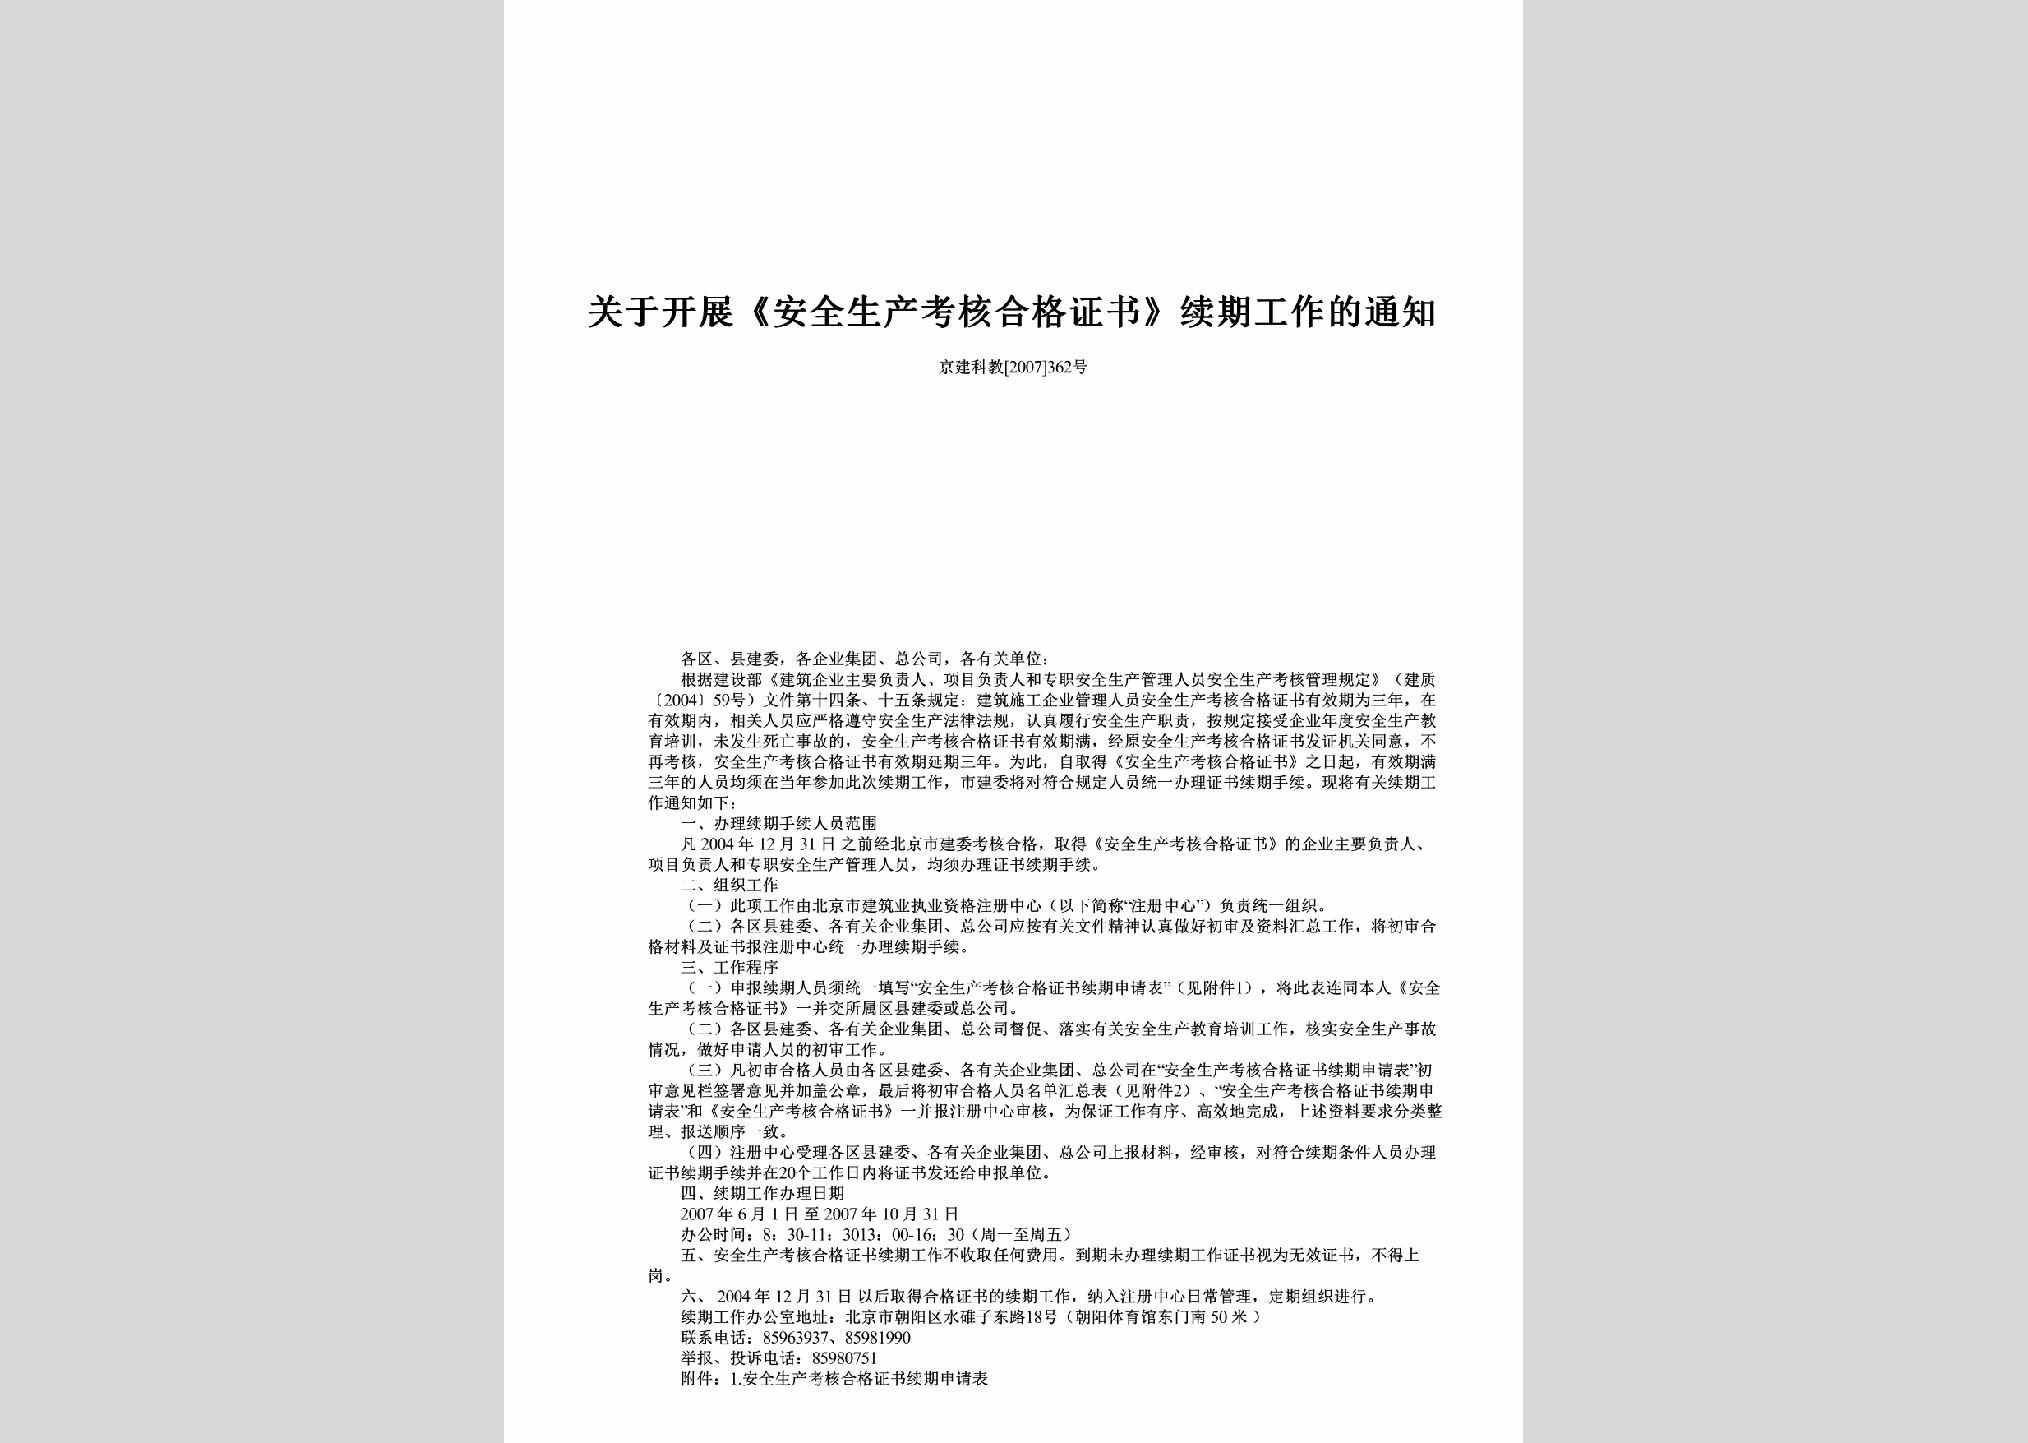 京建科教[2007]362号：关于开展《安全生产考核合格证书》续期工作的通知